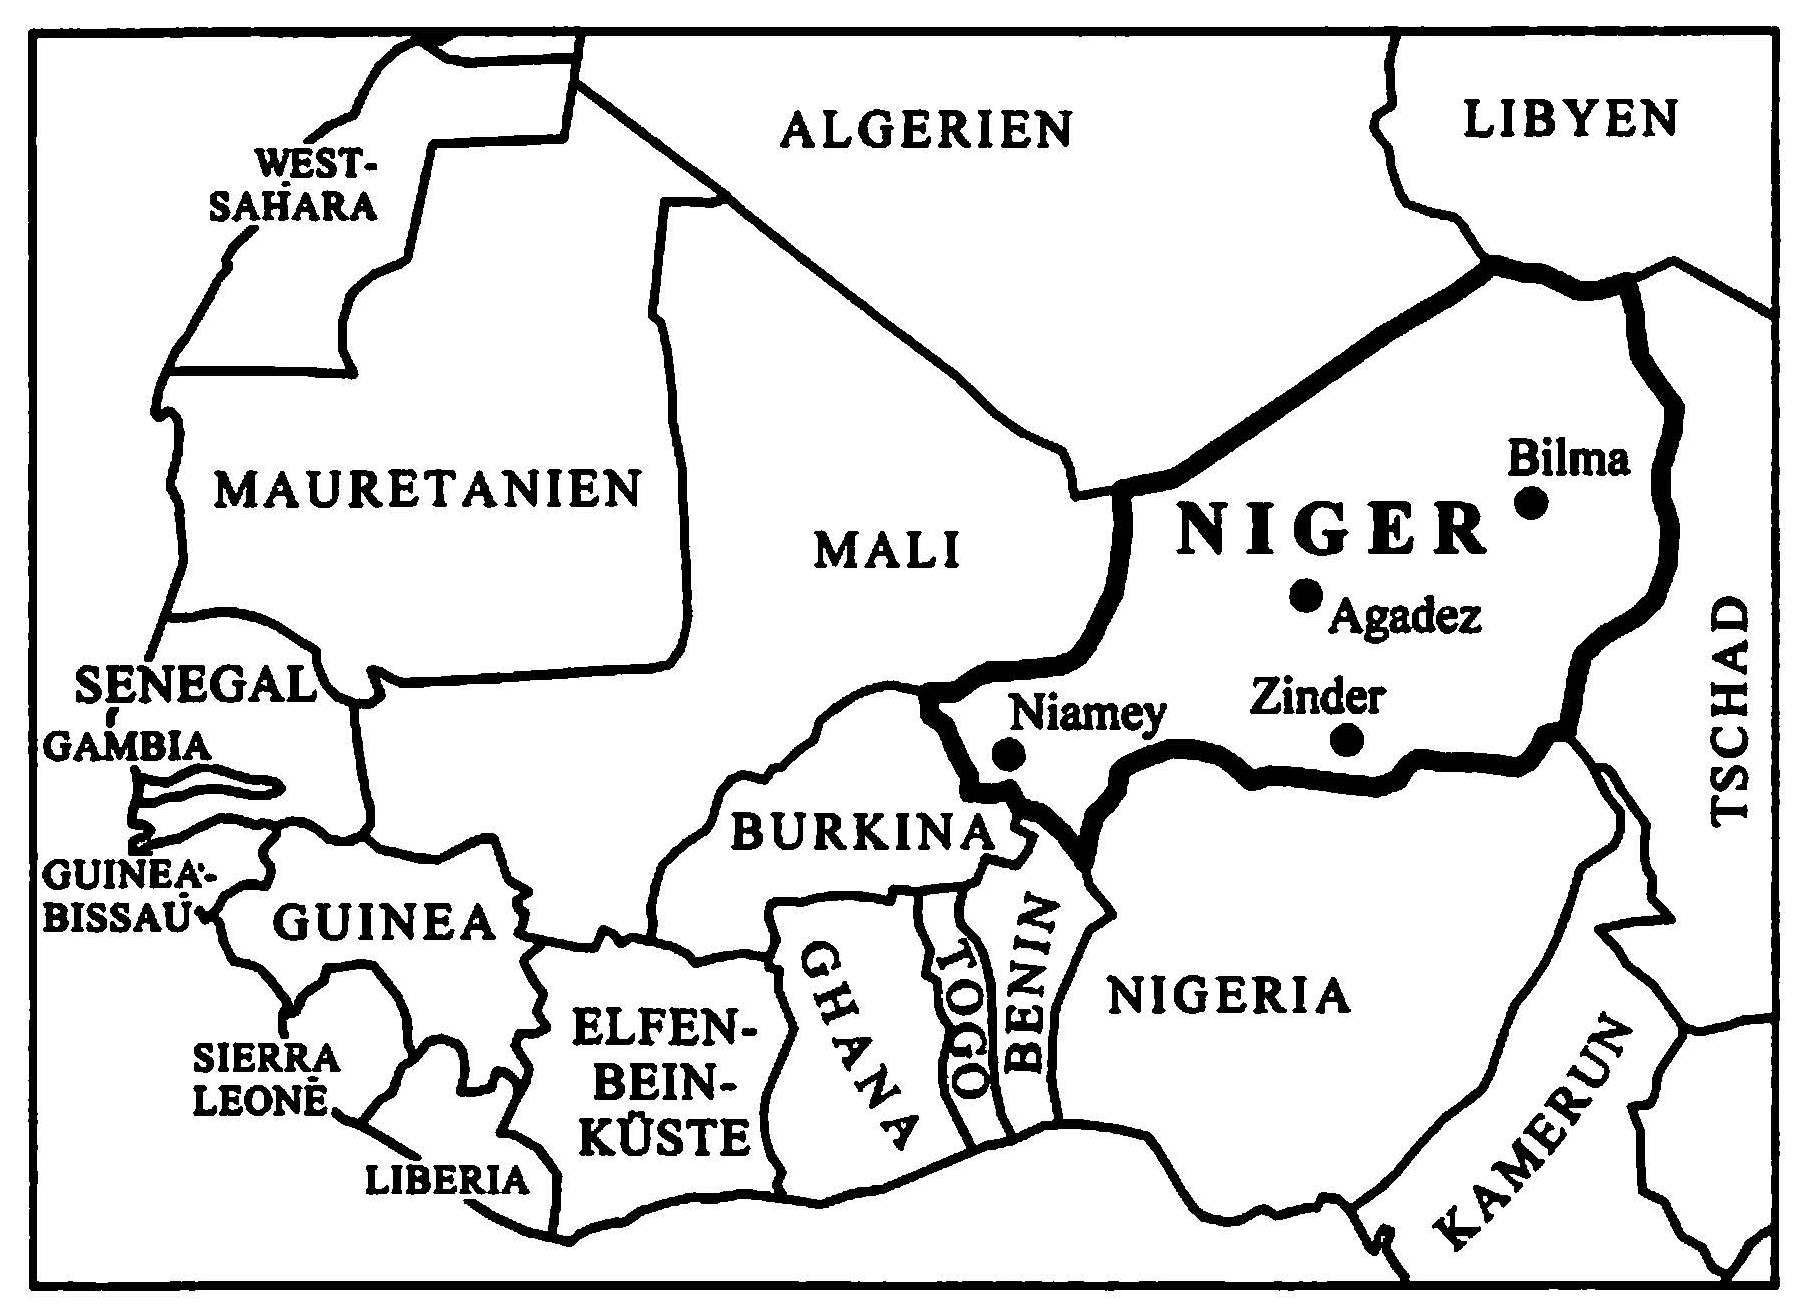 Le tetserret, langue berbère du Niger